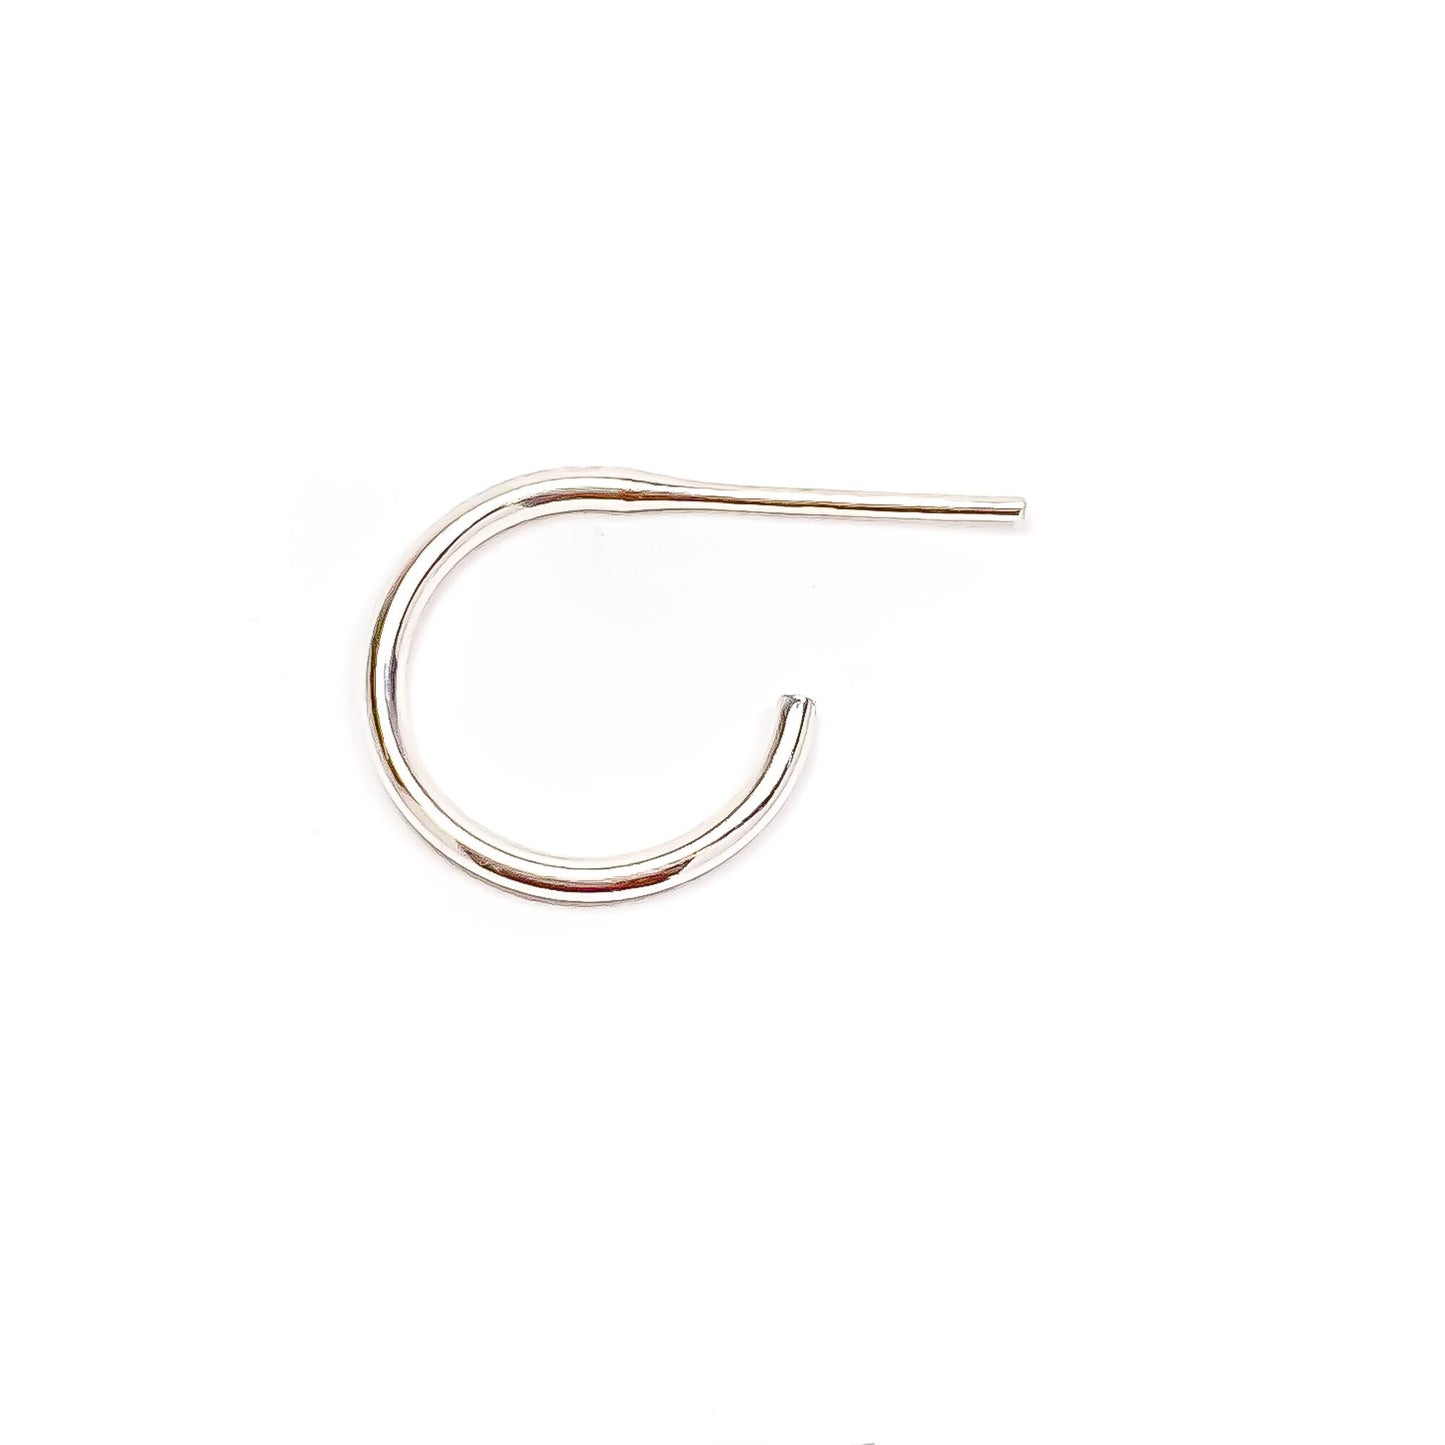 12mm Hoop Earrings with Post, Sterling Silver